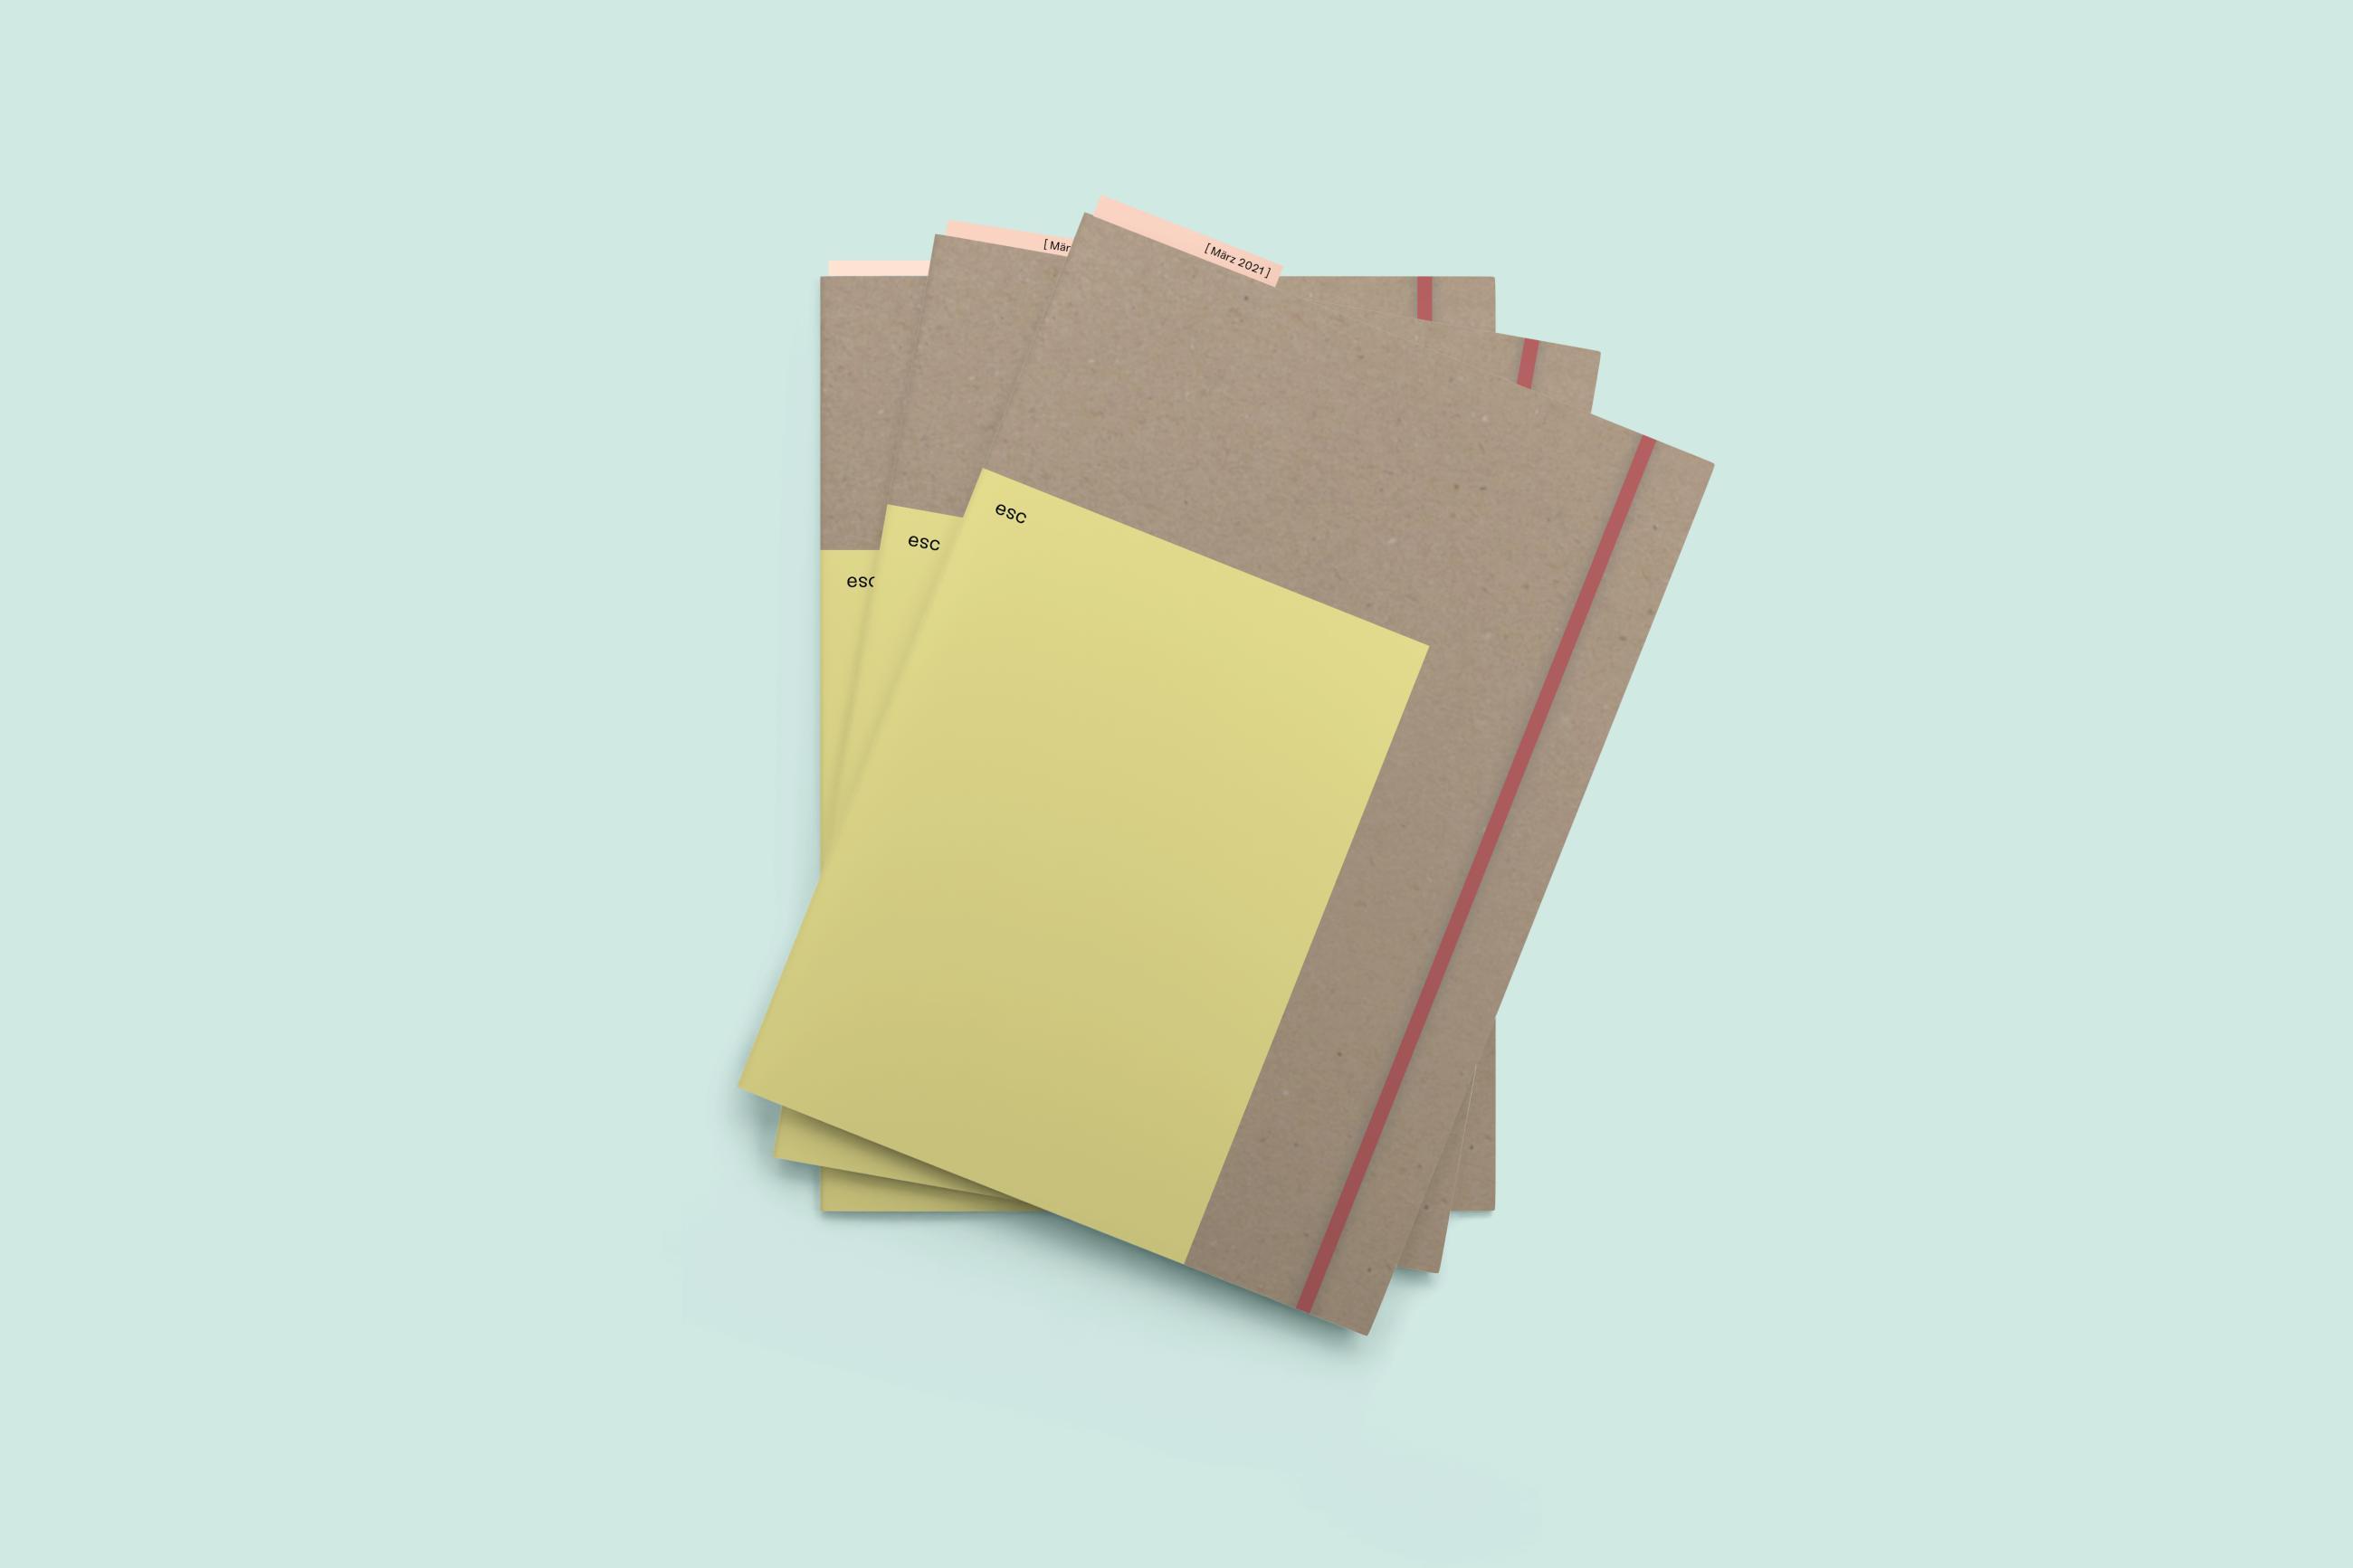 Mockup Datei von 3 dünnen Büchern mit einem Graupappe Umschlag, einen kleineren gelben Umschlag mit der Aufschrift "esc" und einem roten Gummiband